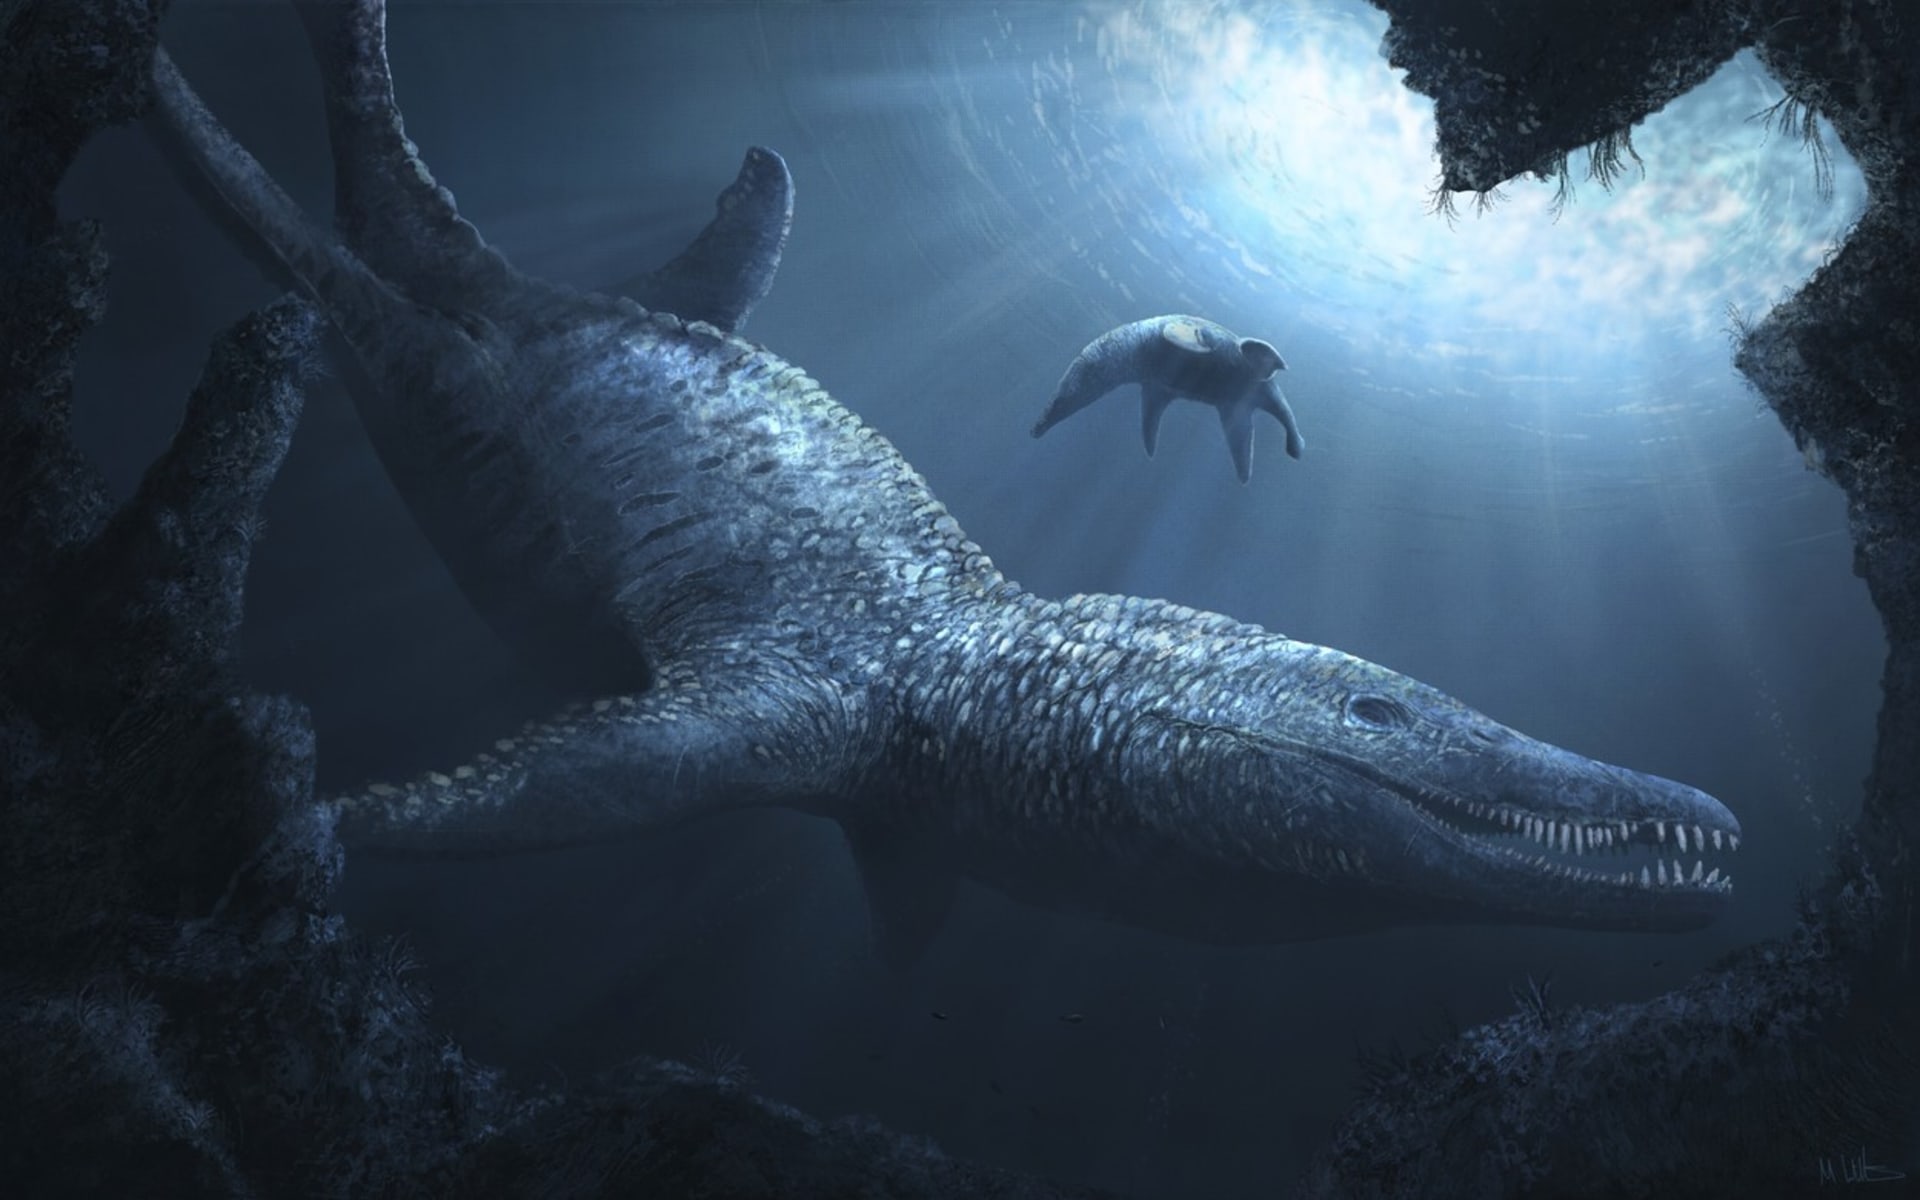 Jiný nález překvapil vědce zkoumající vymřelé druhy, když našli lebku praotce žraloků – pliosaura. Jeho hlava měřila neuvěřitelné dva metry.